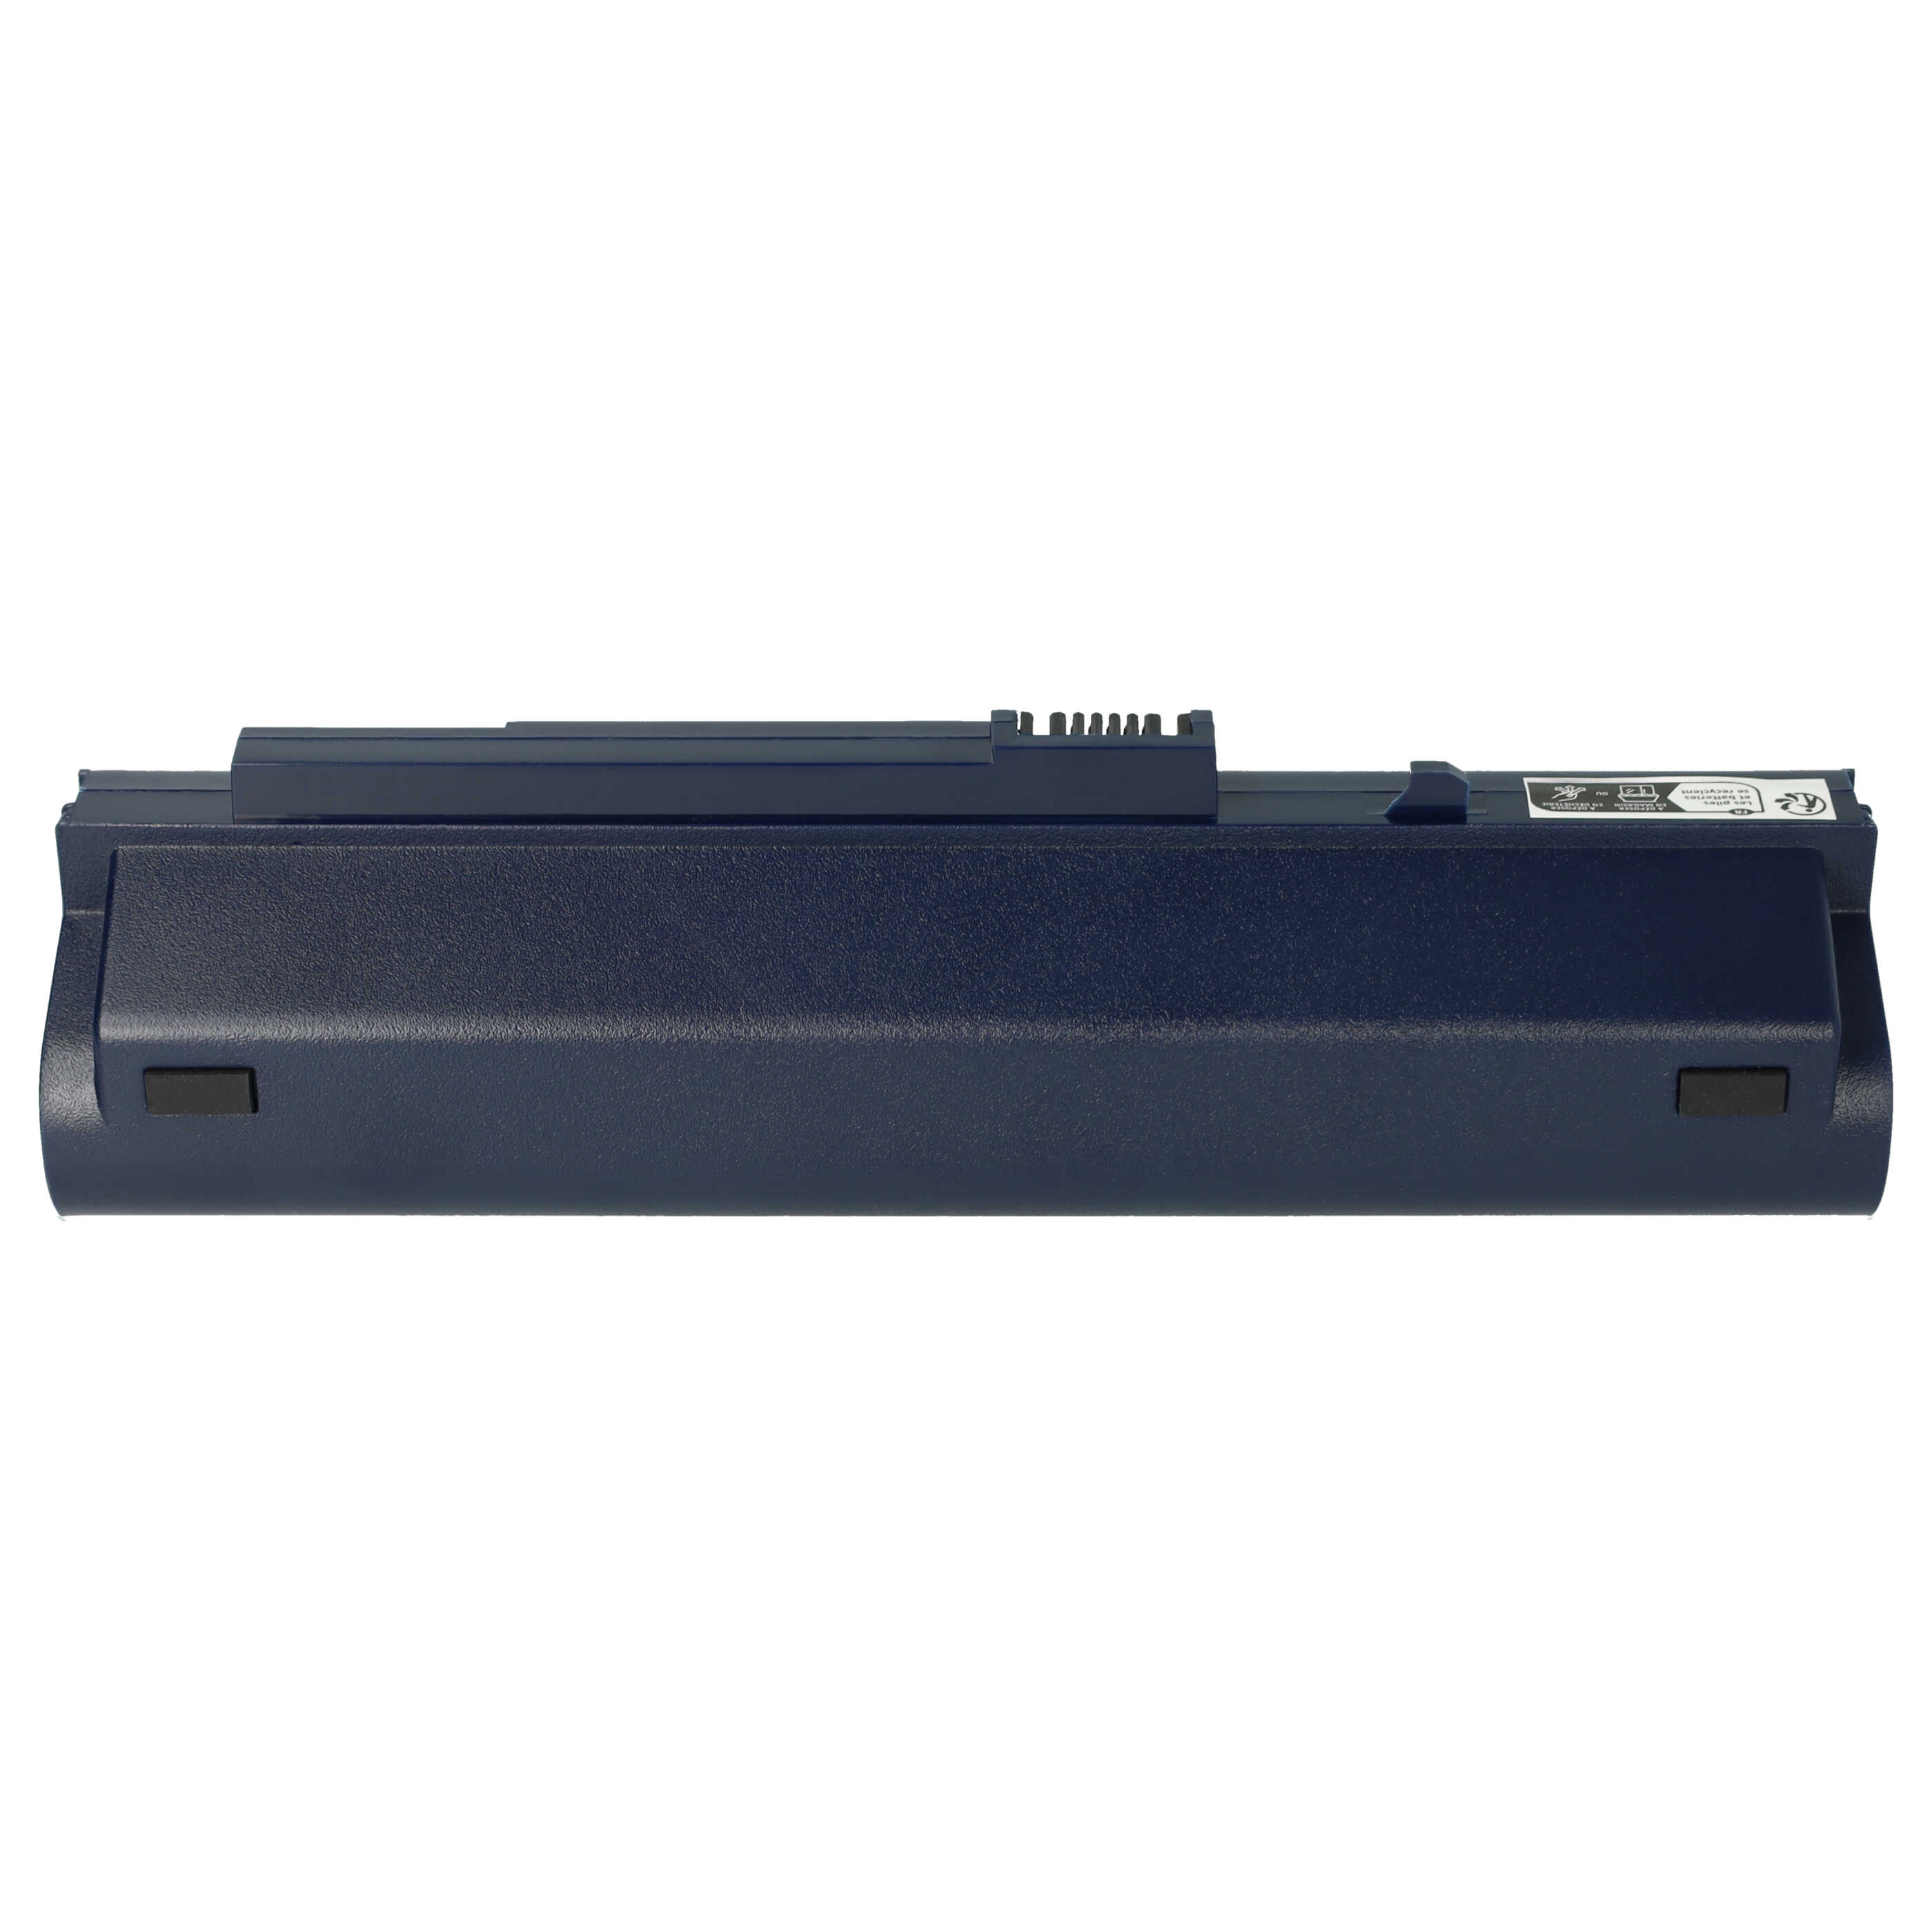 Batteria sostituisce Acer 934T2780F, BT.00605.035 per notebook Gateway - 6600mAh 11,1V Li-Ion blu scuro